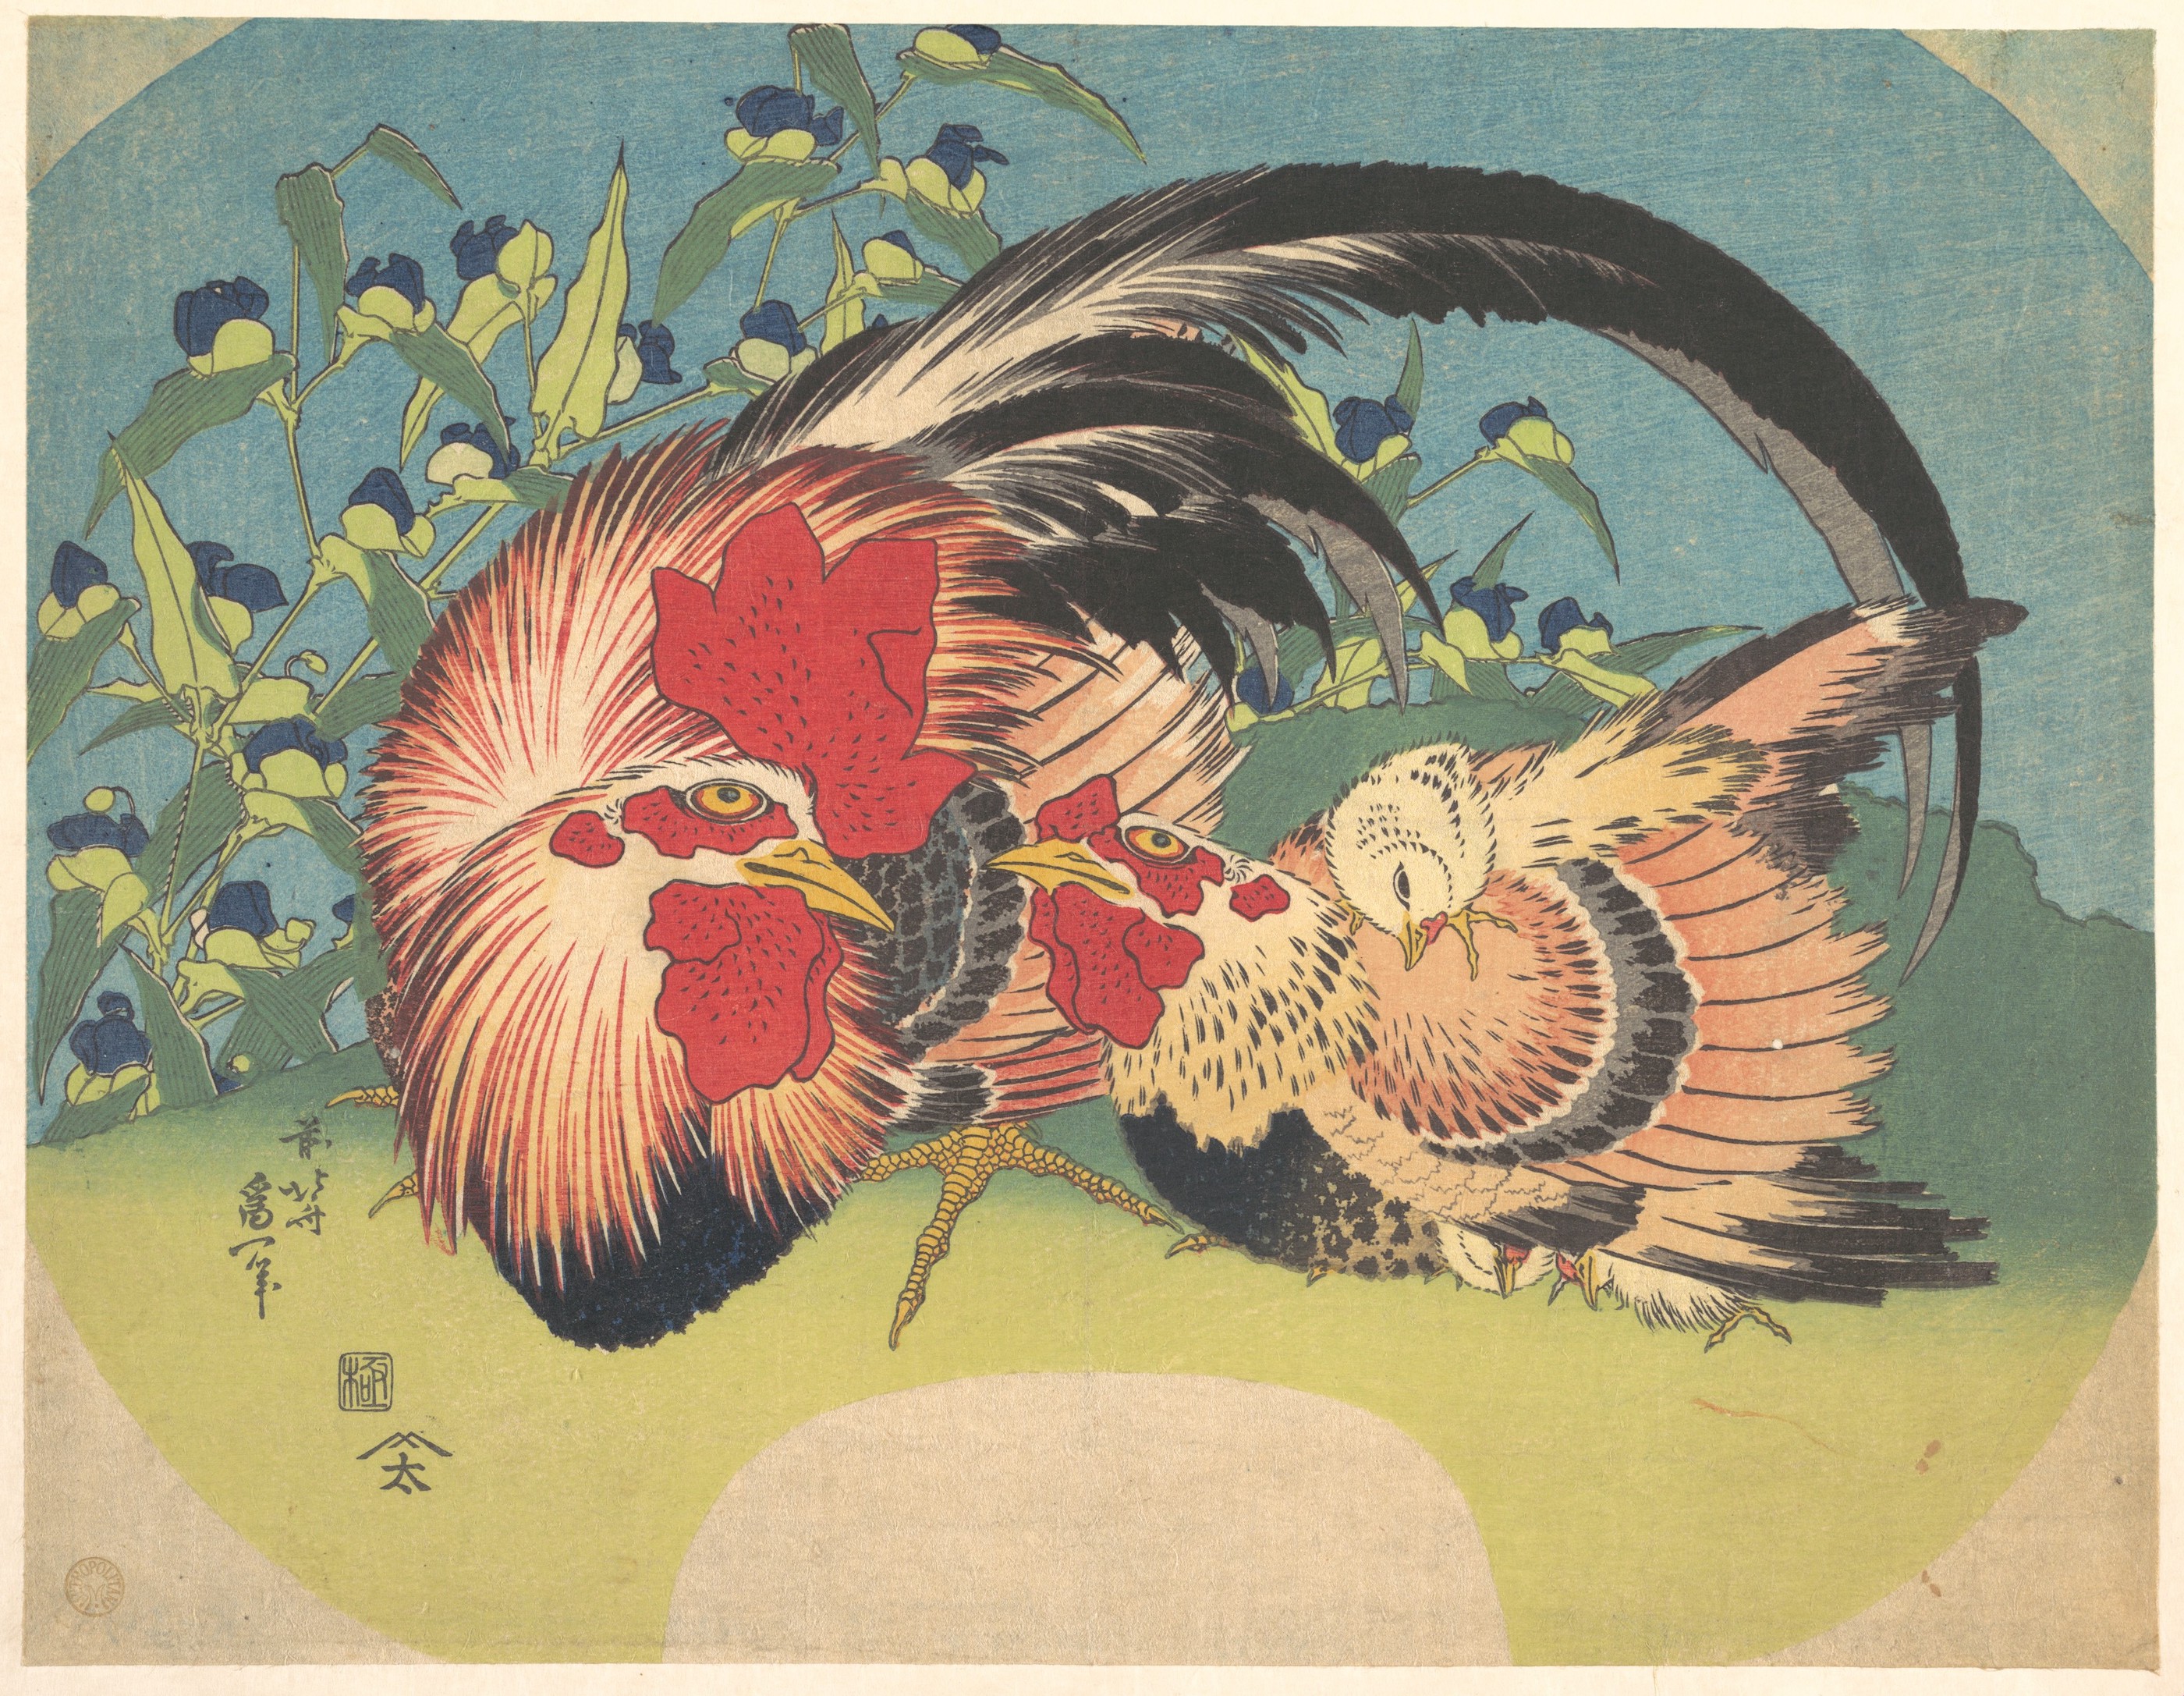 雞與紫露草 by Katsushika Hokusai - 約 1830 年至 1833 年 - 22.9 x 29.2 釐米 